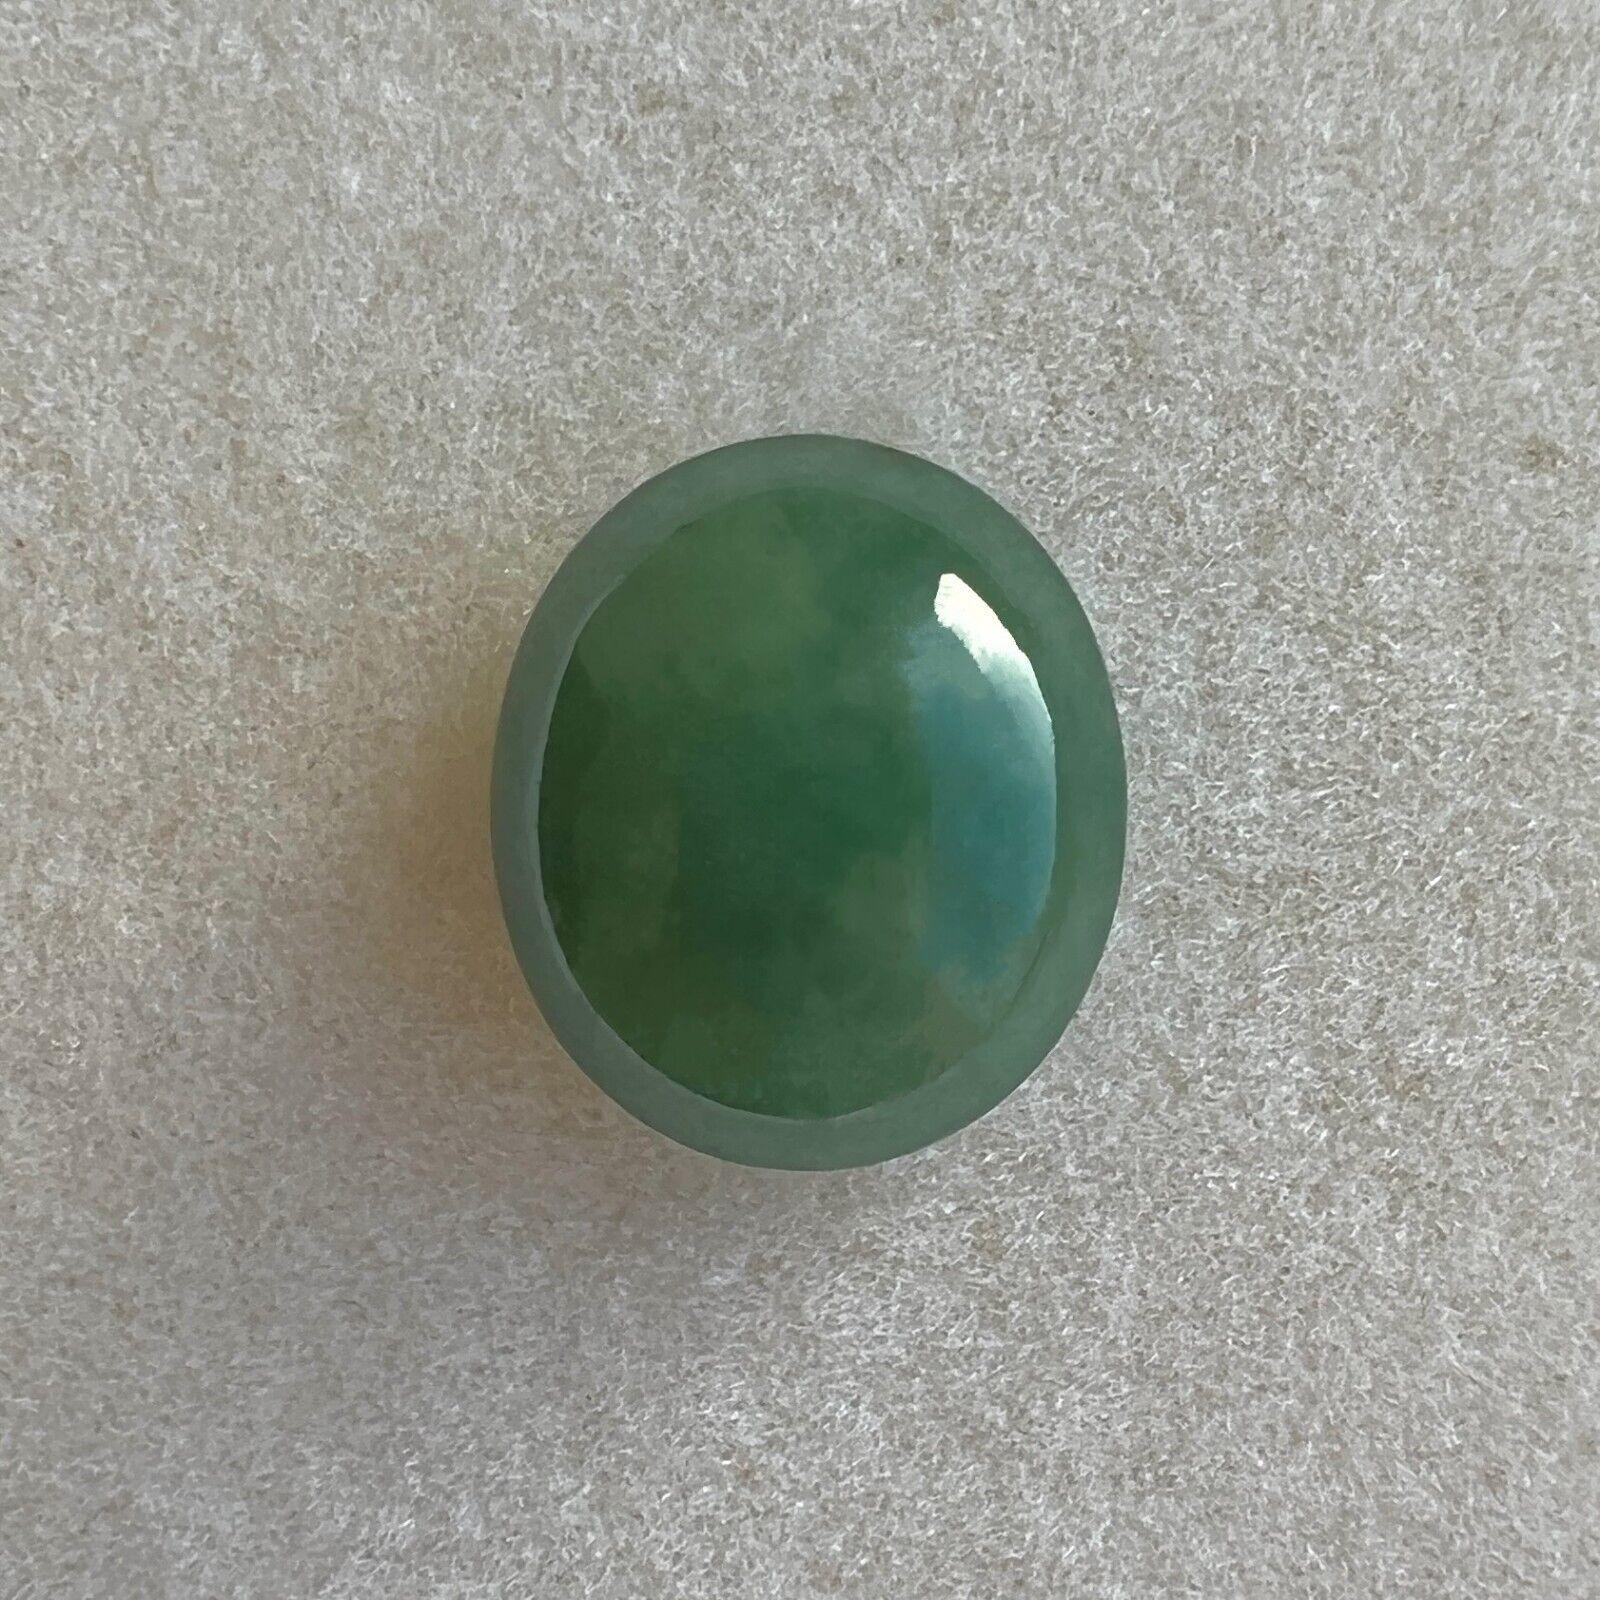 original jade stone price in india